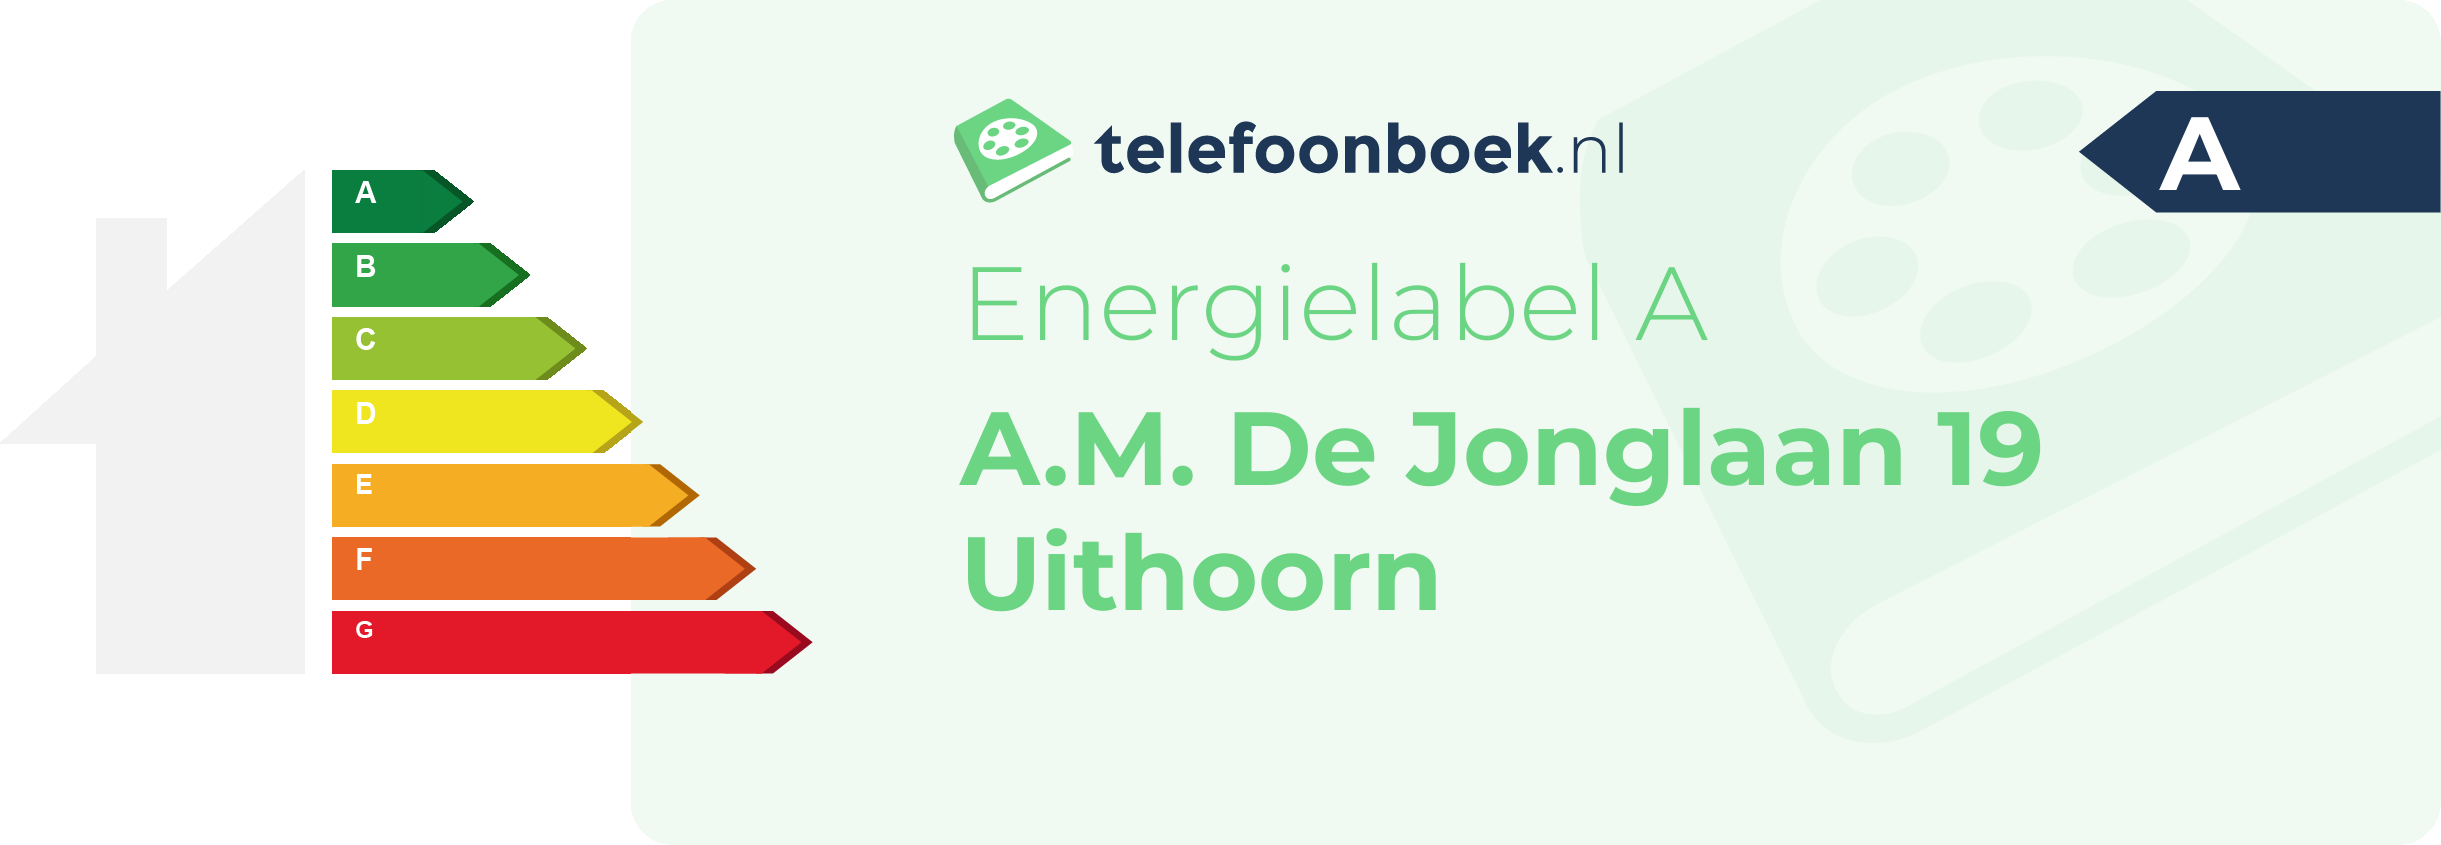 Energielabel A.M. De Jonglaan 19 Uithoorn